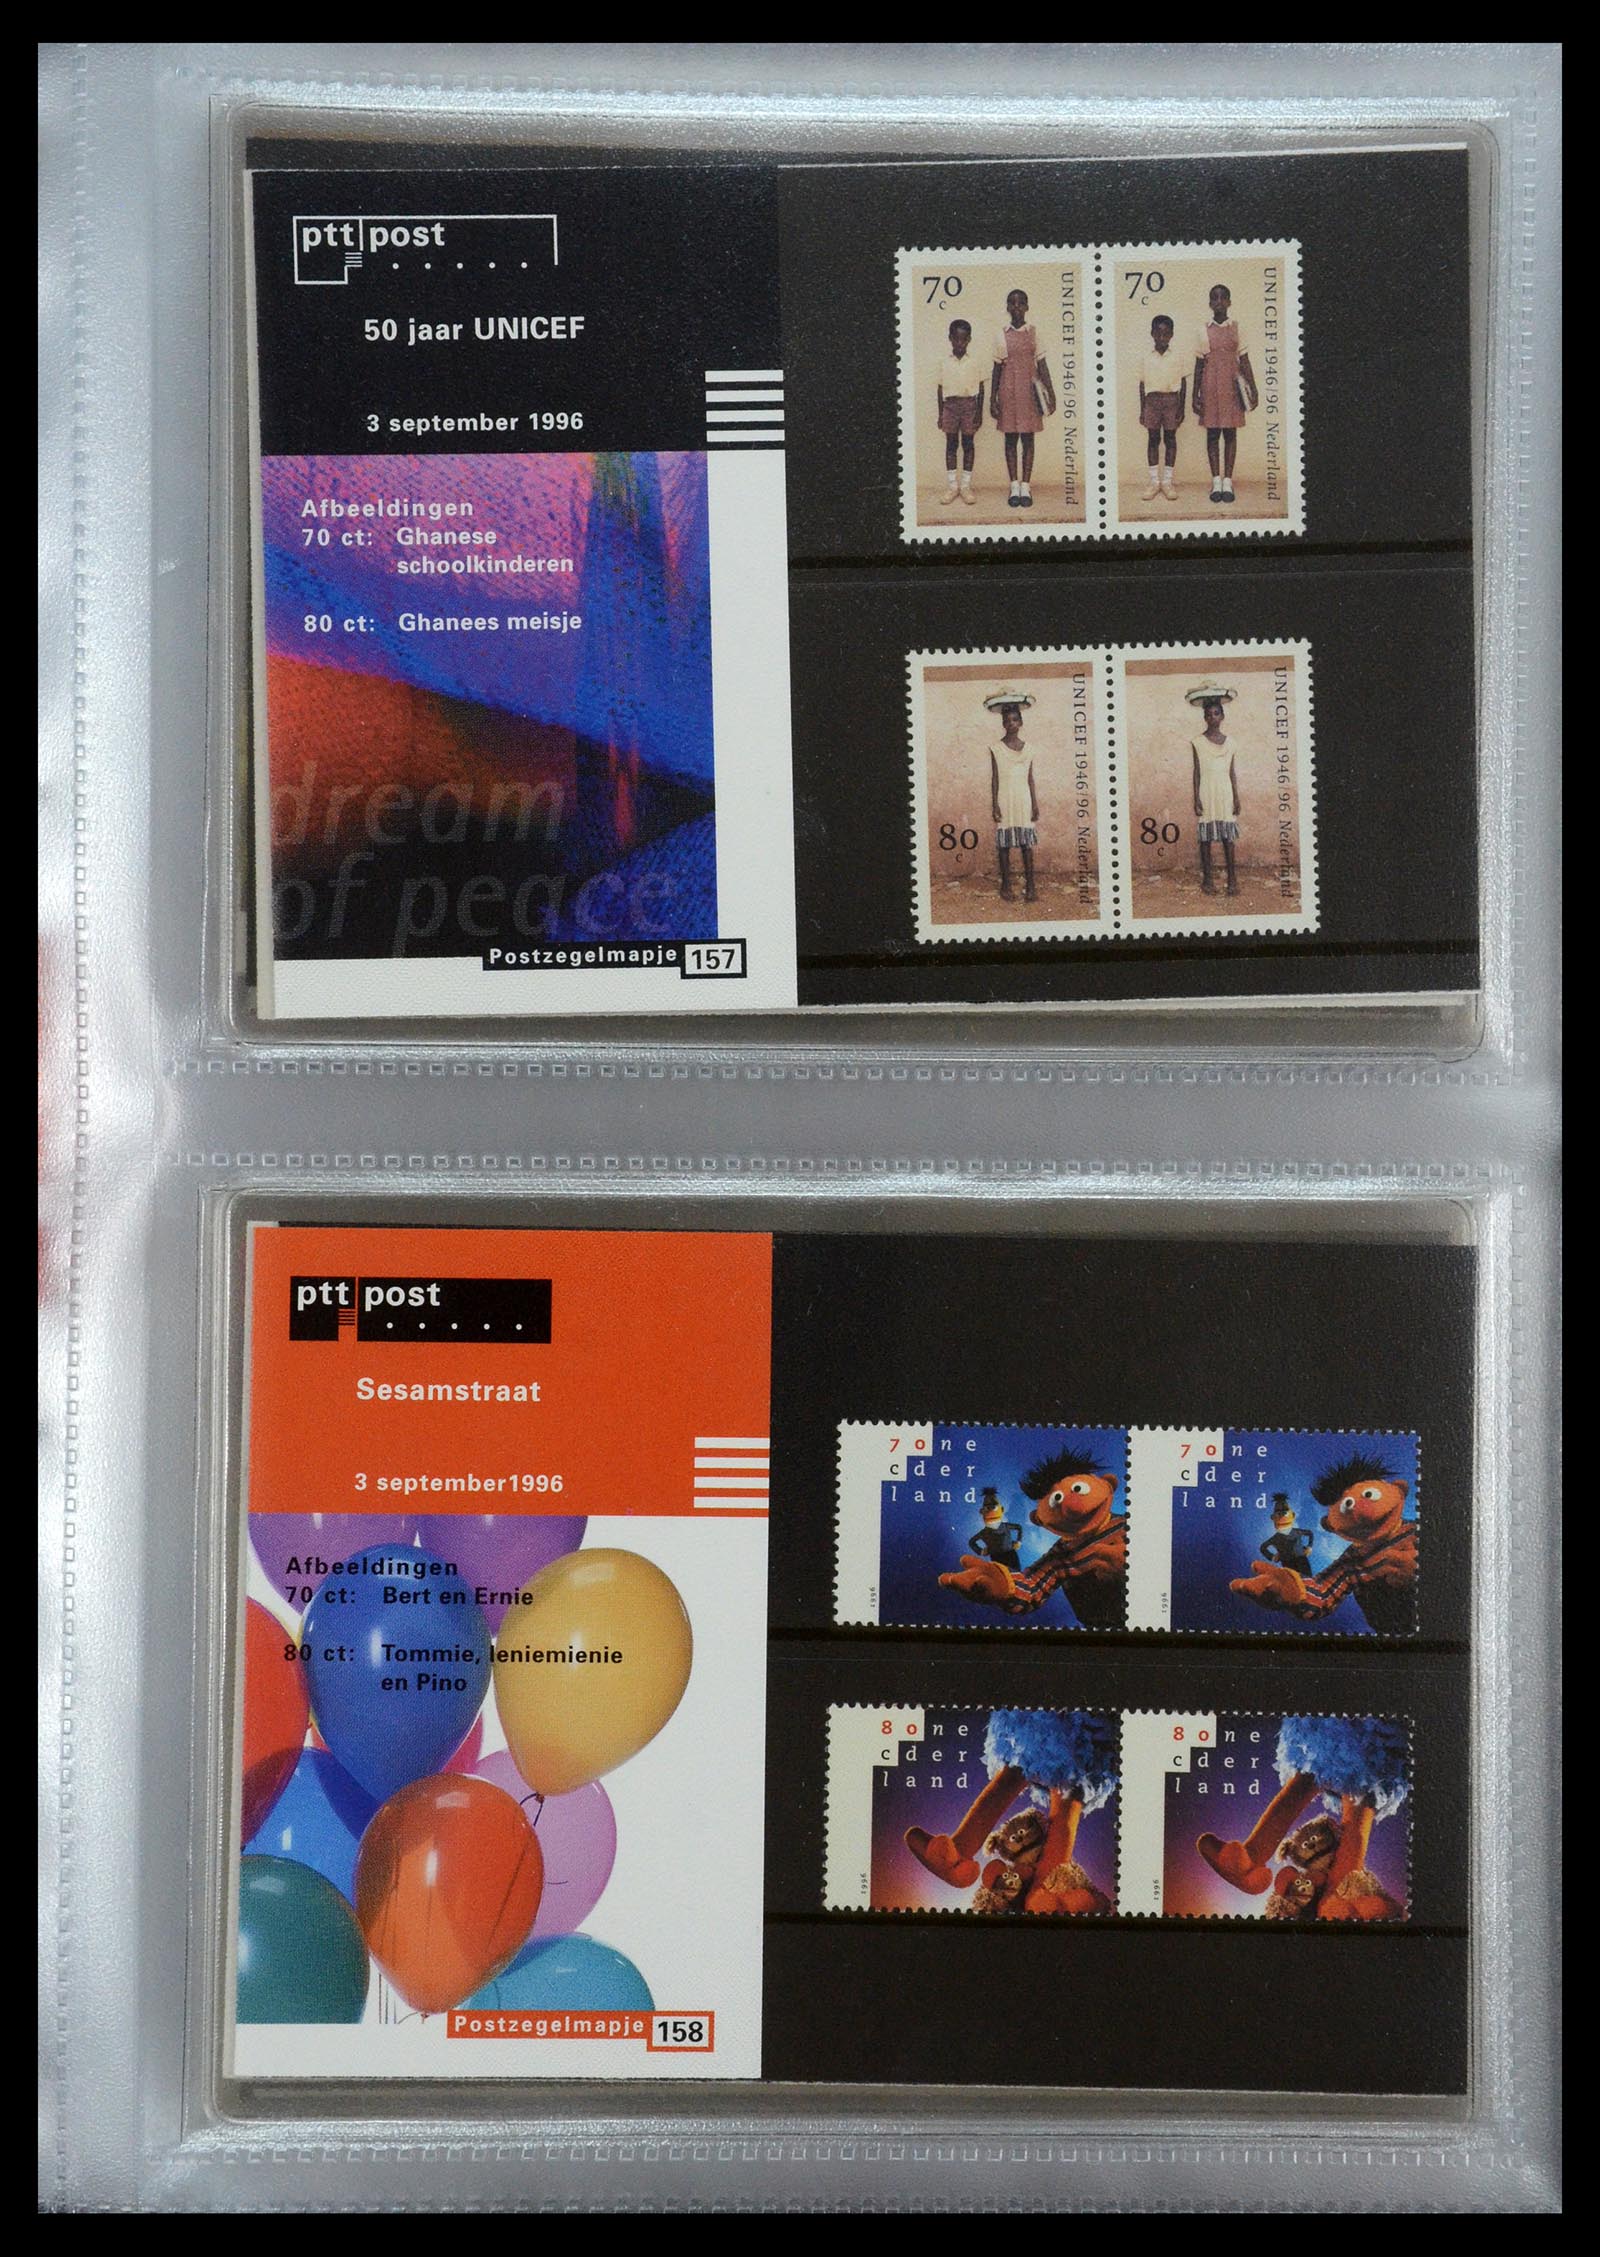 35144 080 - Stamp Collection 35144 Netherlands PTT presentation packs 1982-2021!